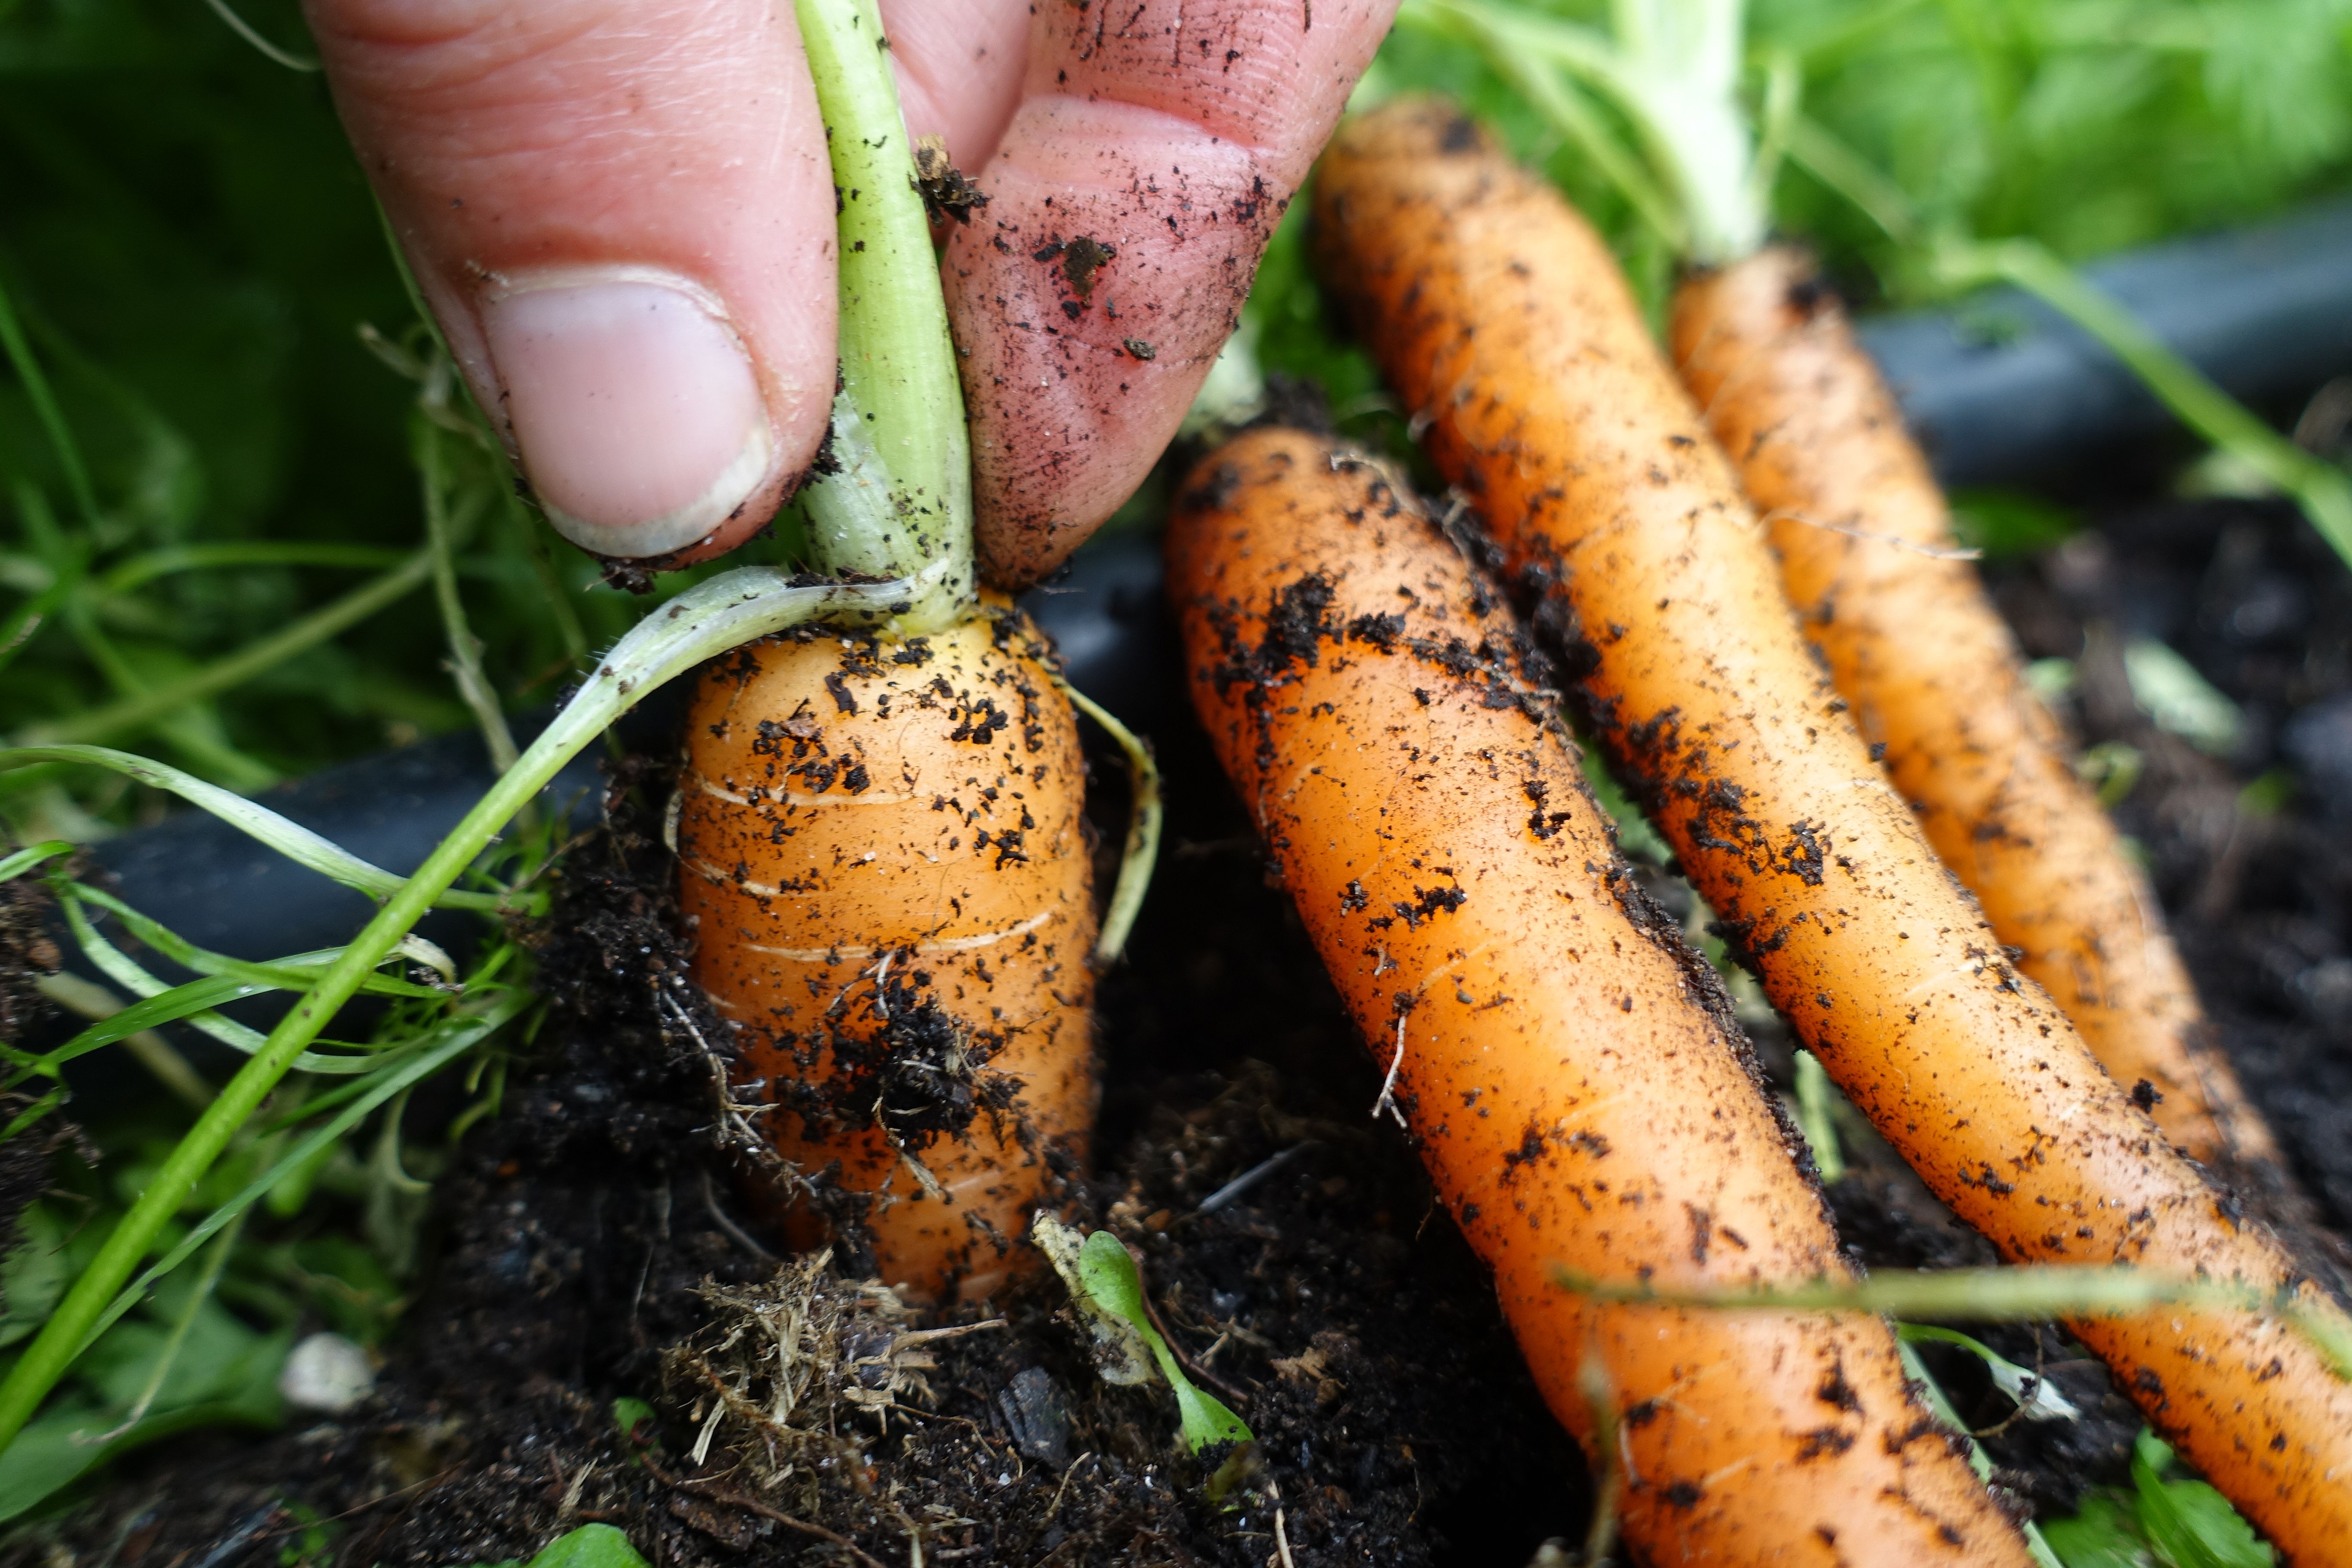 En hand drar upp en liten morot ur jorden. Harvesting carrots, pulling a small carrot from the ground. 